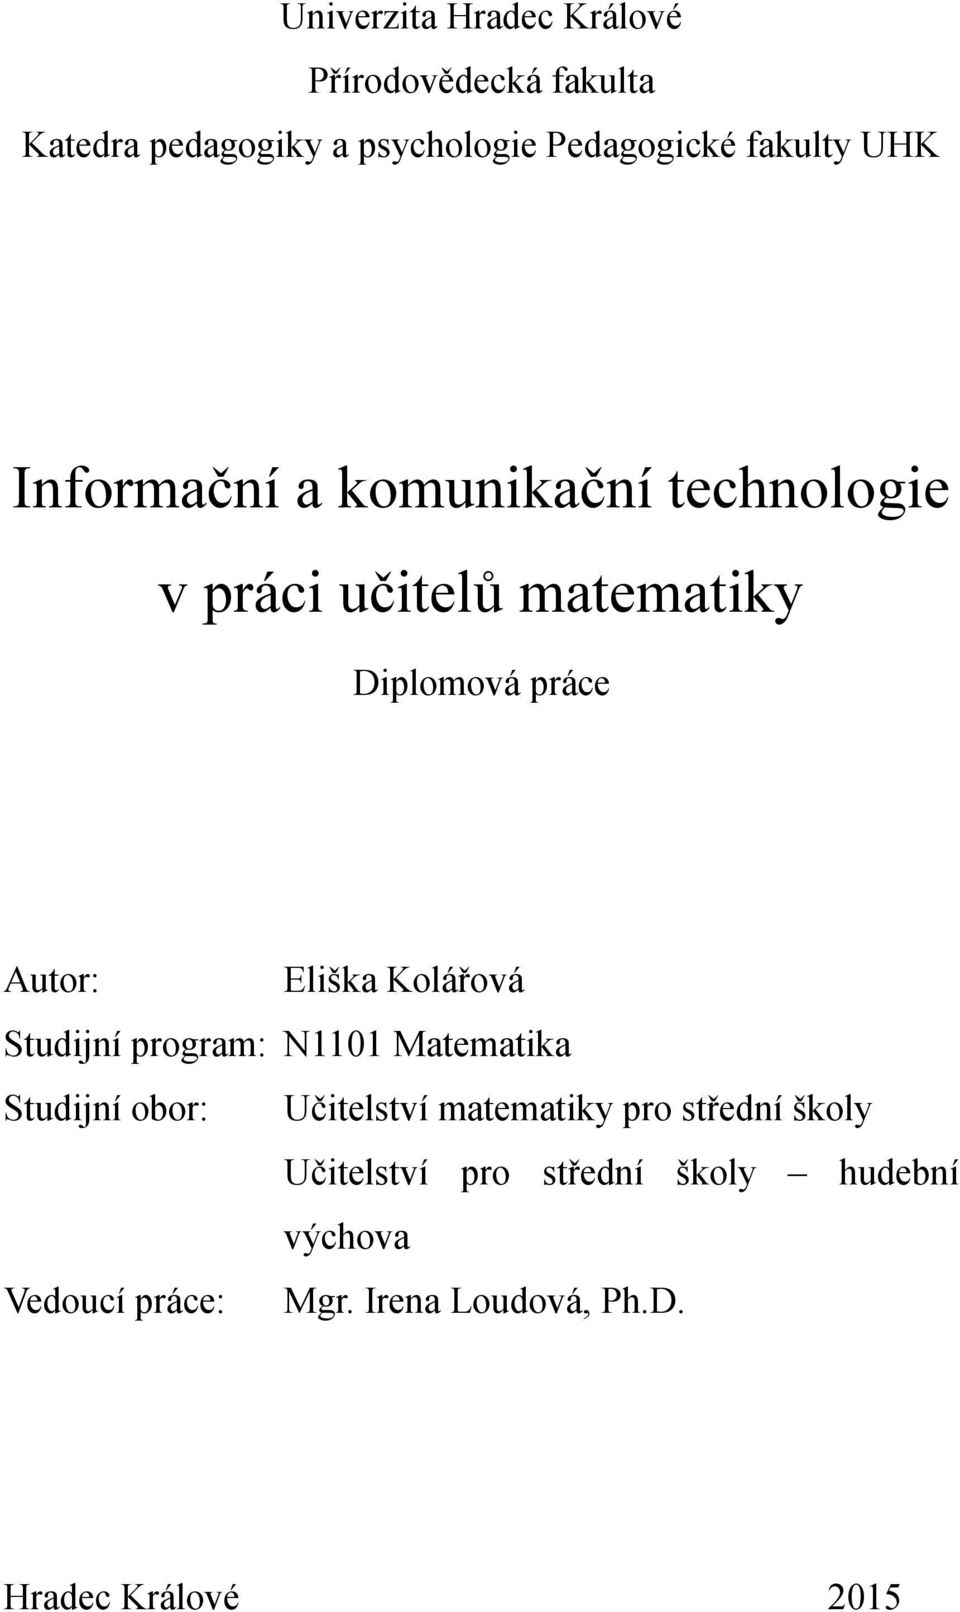 Eliška Kolářová Studijní program: N1101 Matematika Studijní obor: Učitelství matematiky pro střední